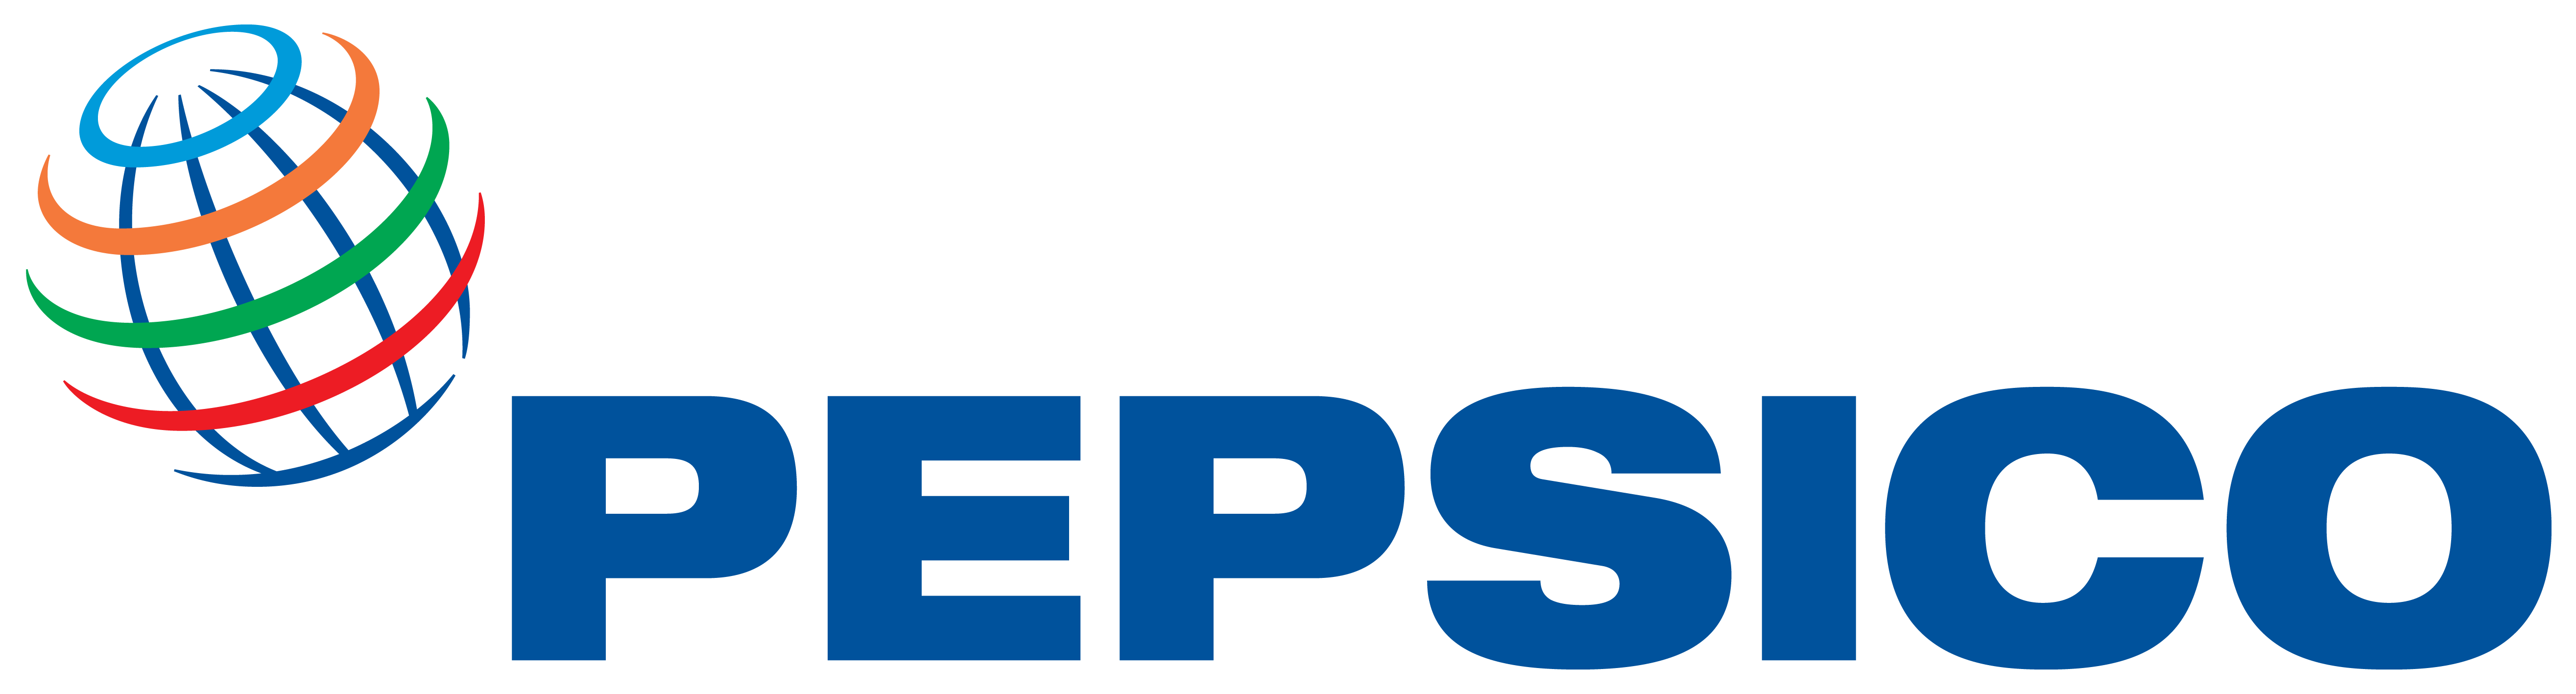 PepsiCo sponsorem Ligi Mistrzów UEFA